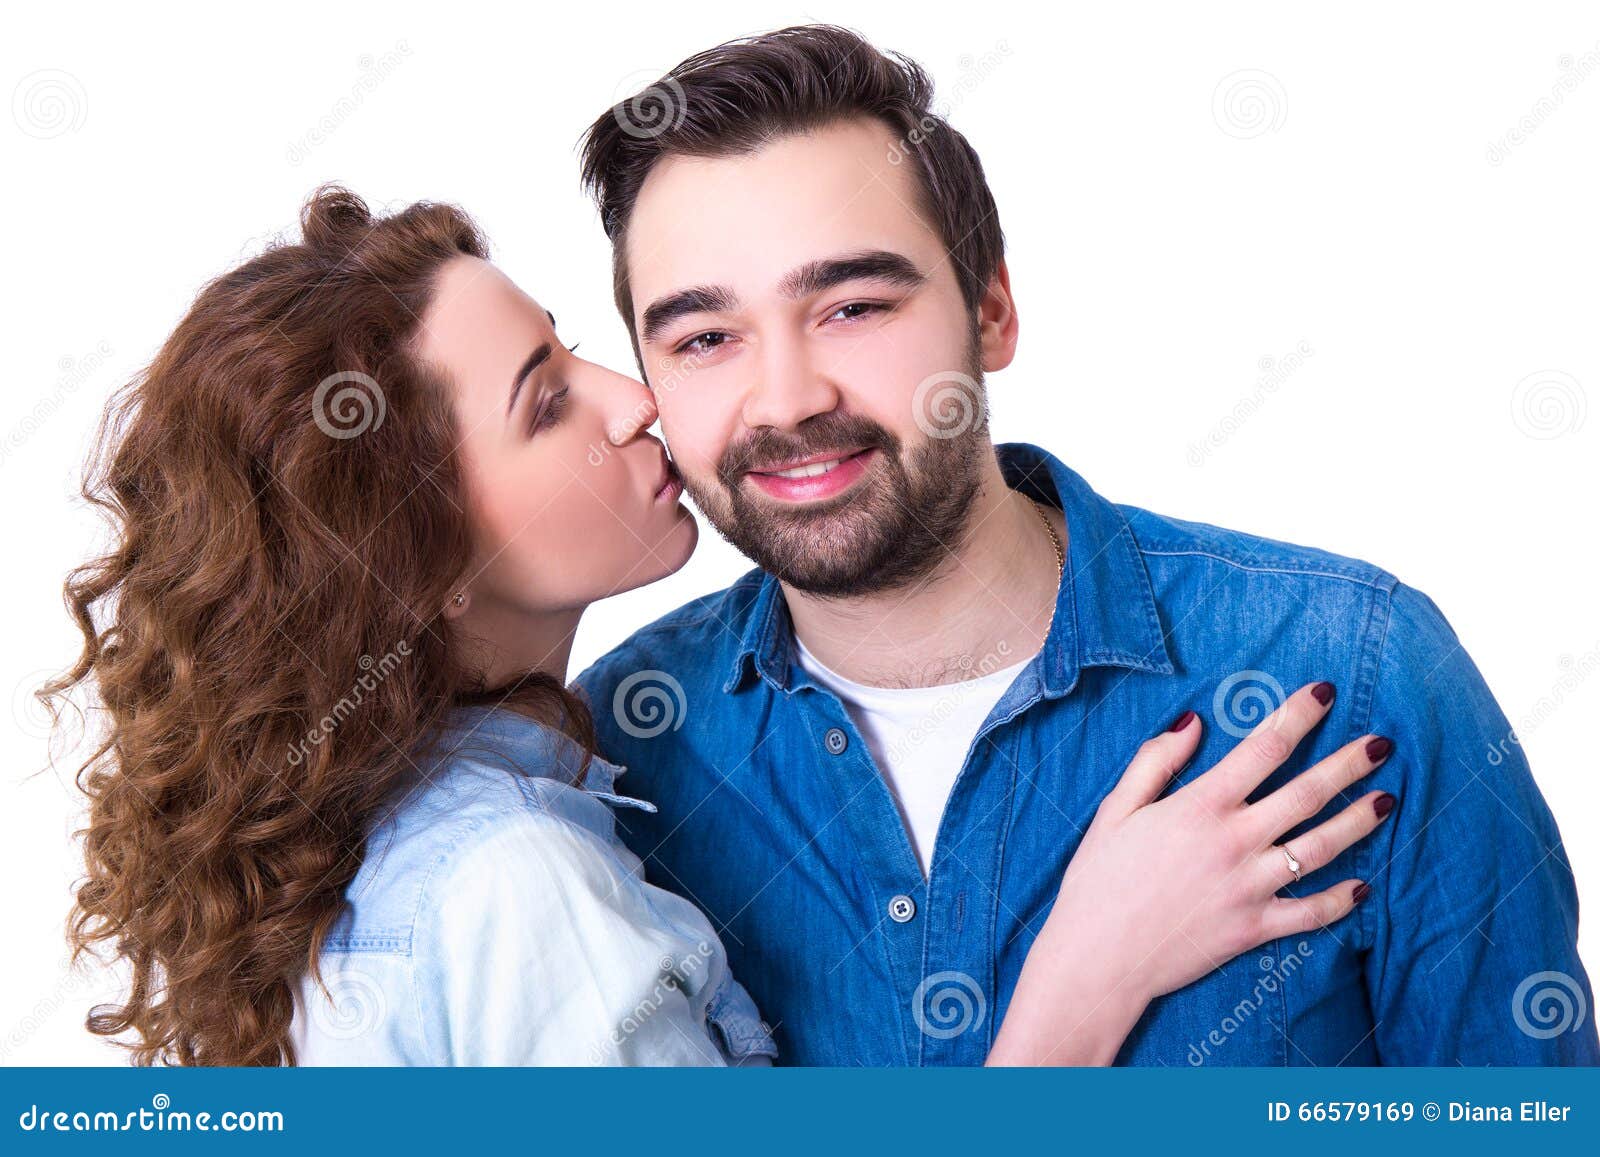 Kissing White Girl